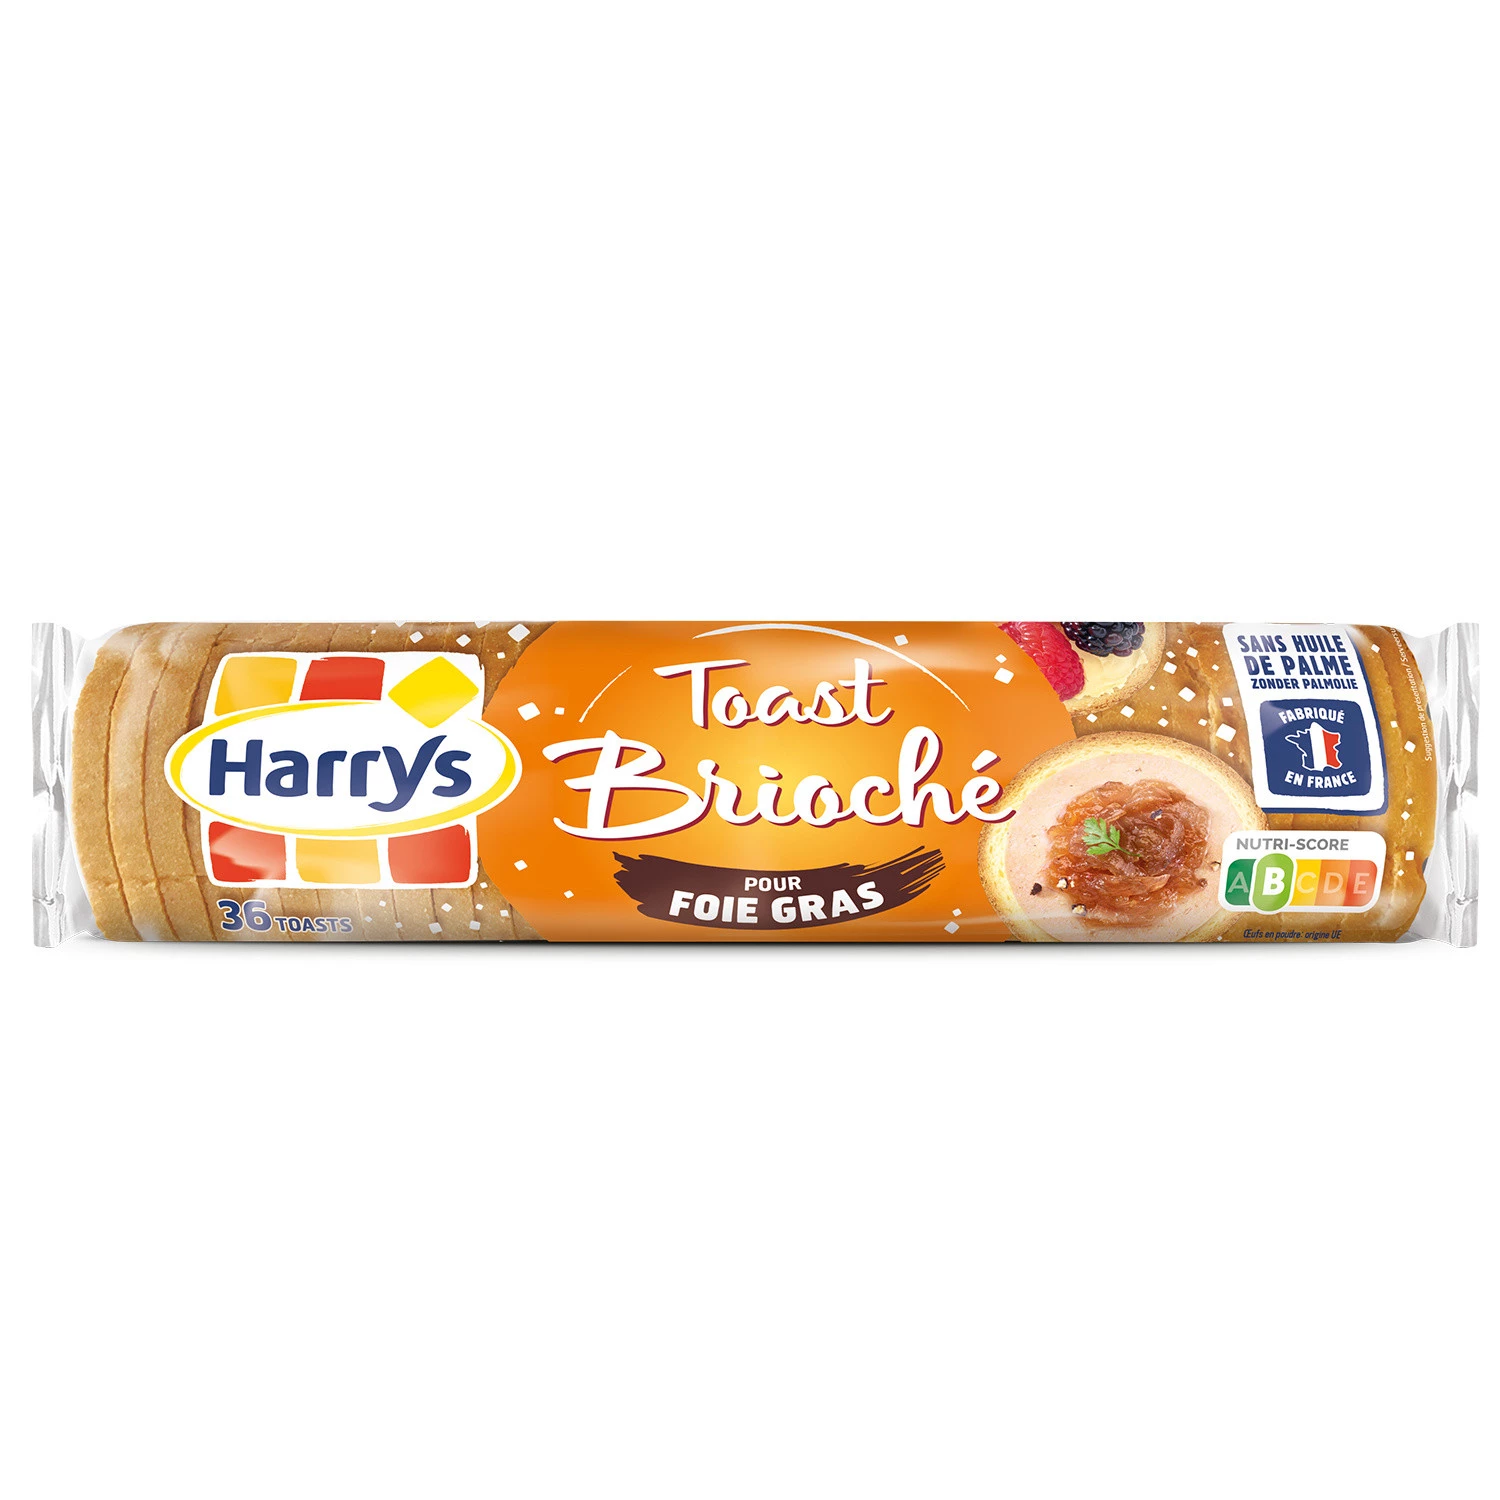 Harry’s brioche toast for foie gras 280g